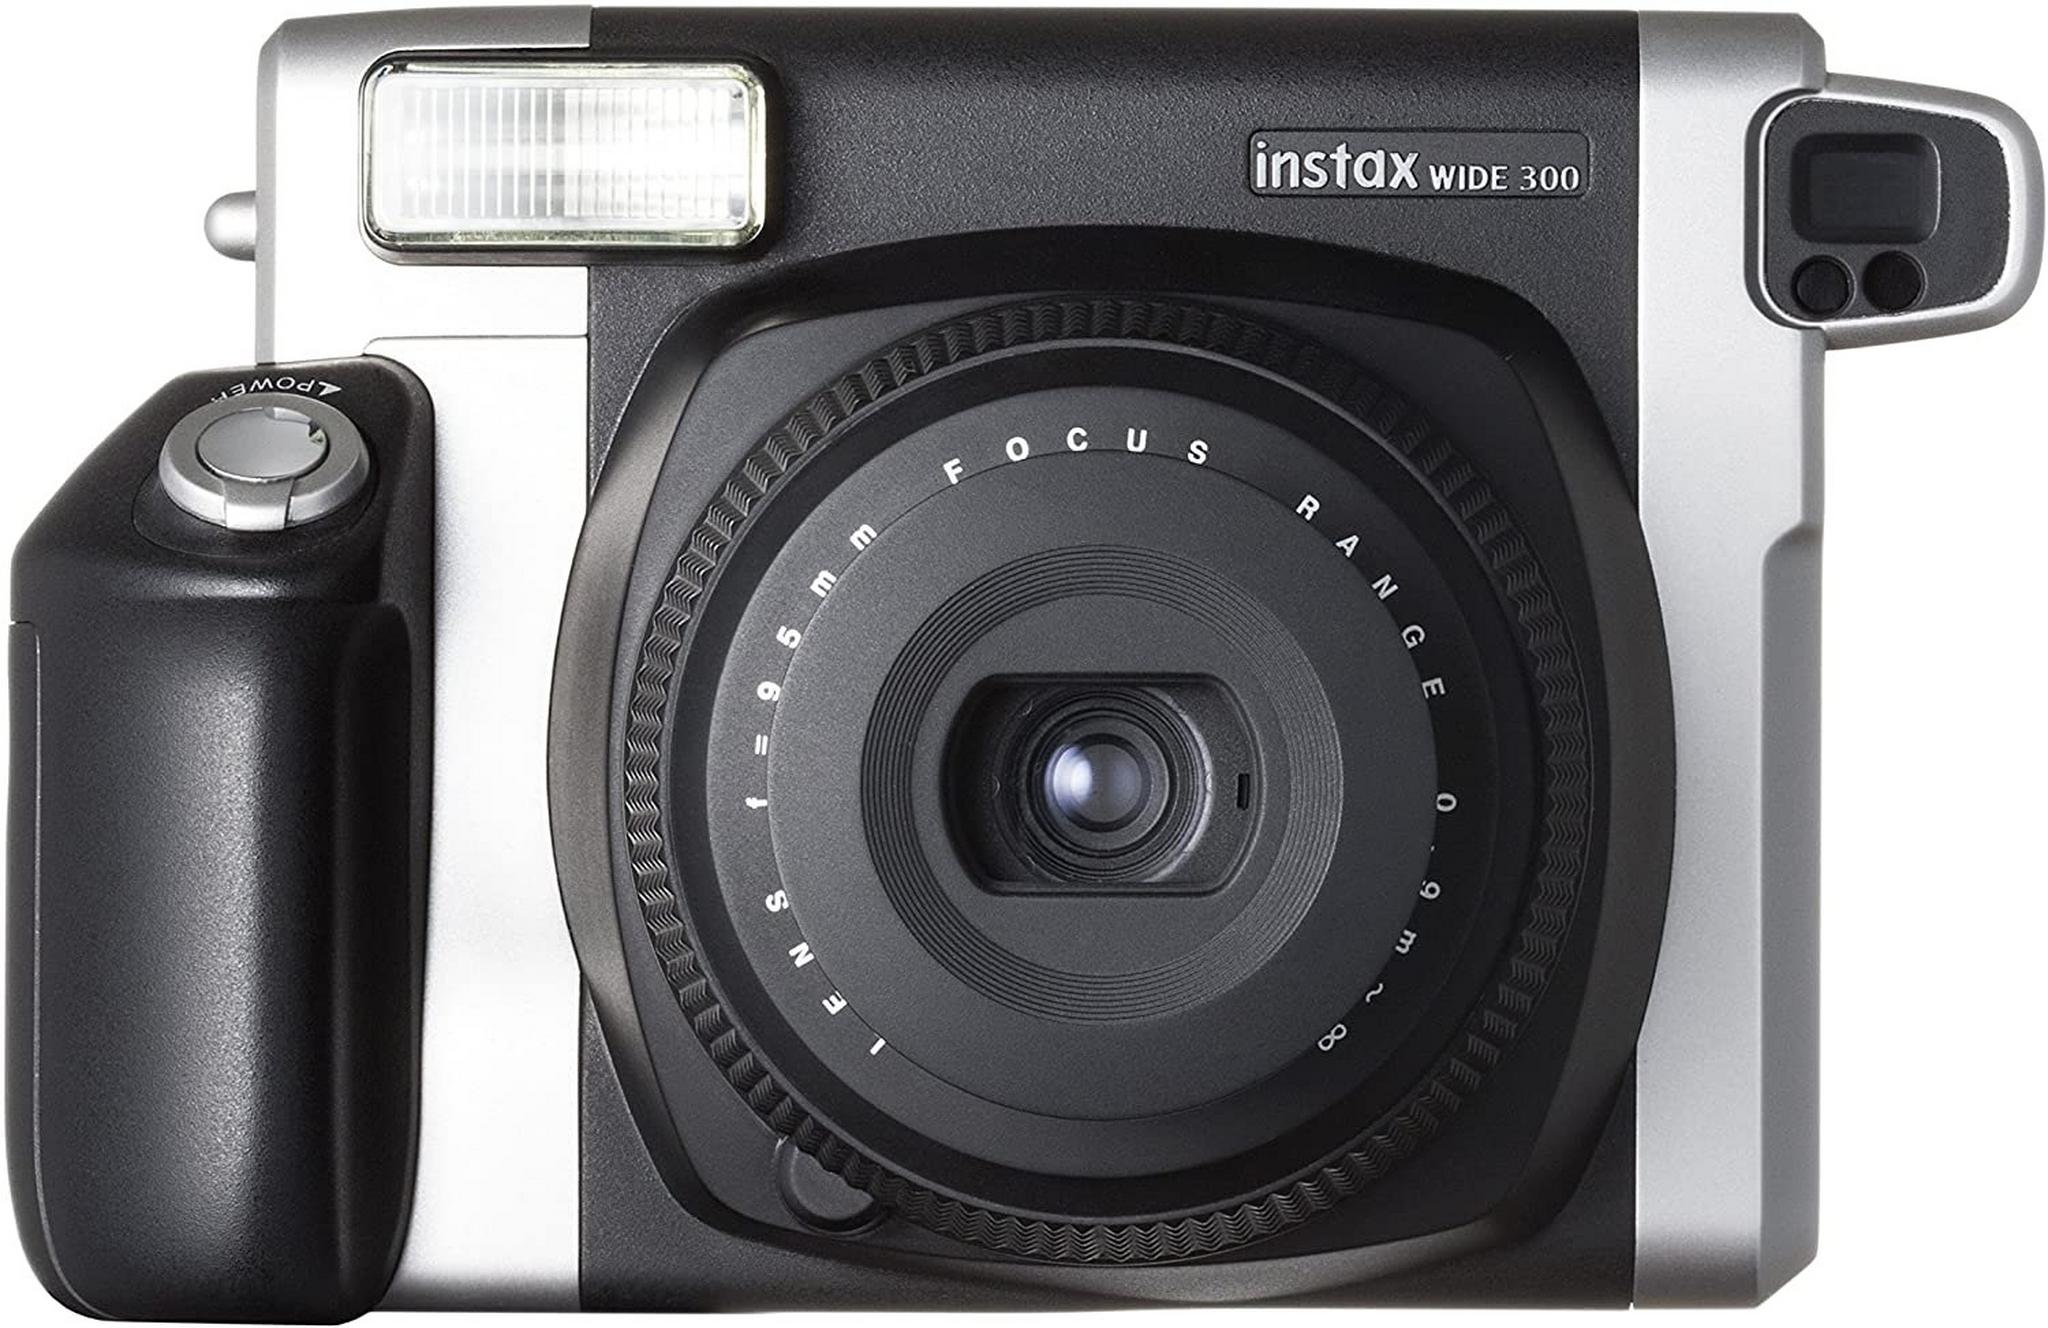 كاميرا إنسفاكس وايد ٣٠٠ للتصوير الفوري من فوجي فيلم